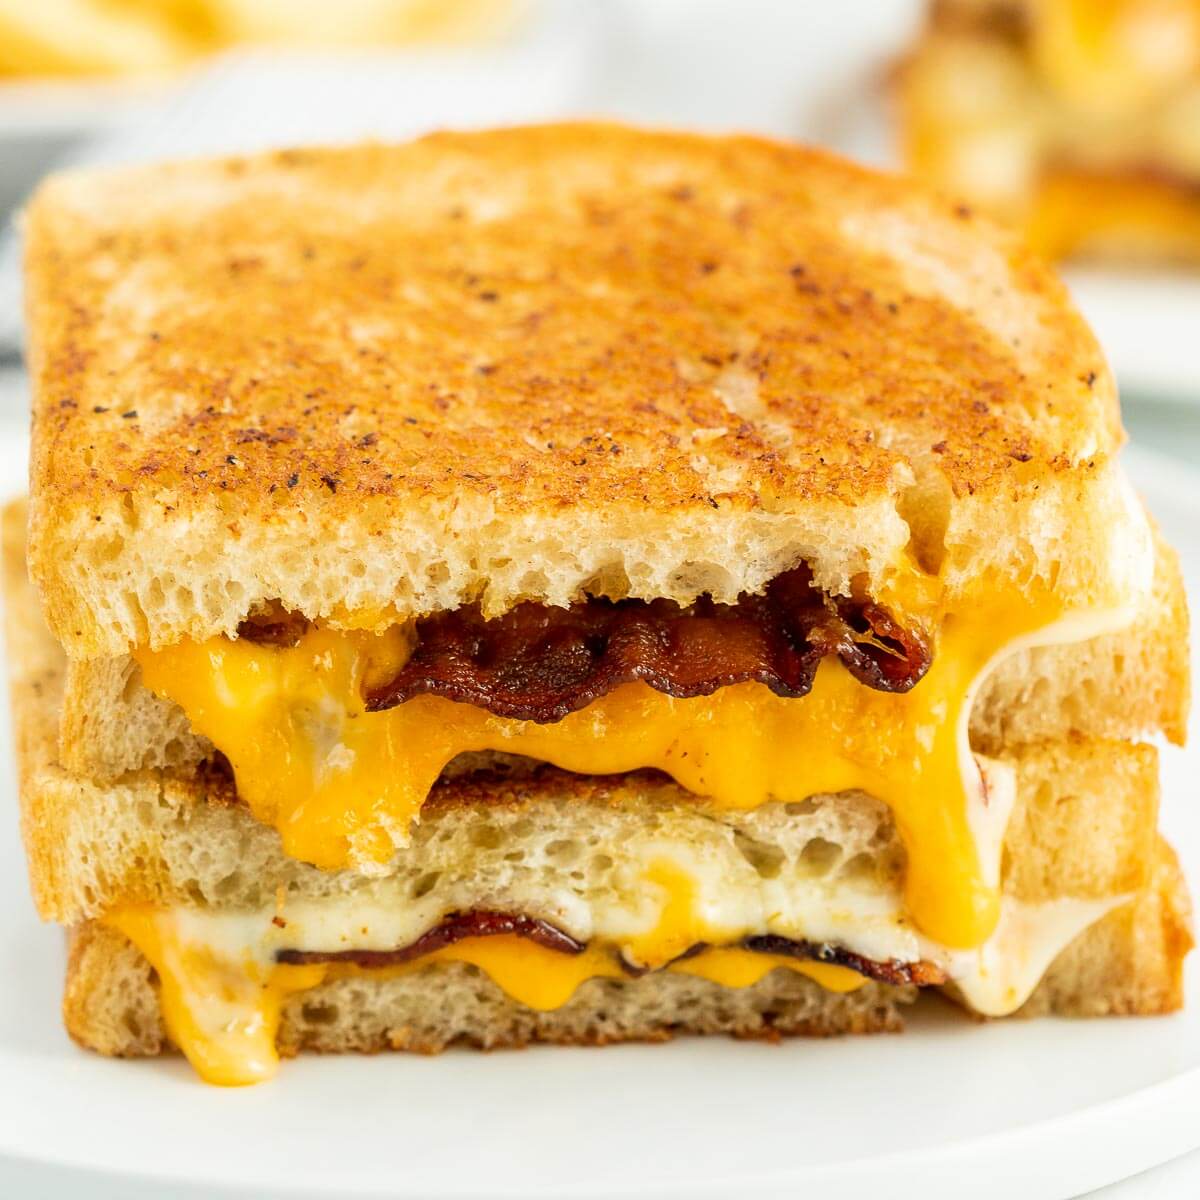 https://www.eatingonadime.com/wp-content/uploads/2023/01/eod-bacon-grilled-cheese-6-2.jpg